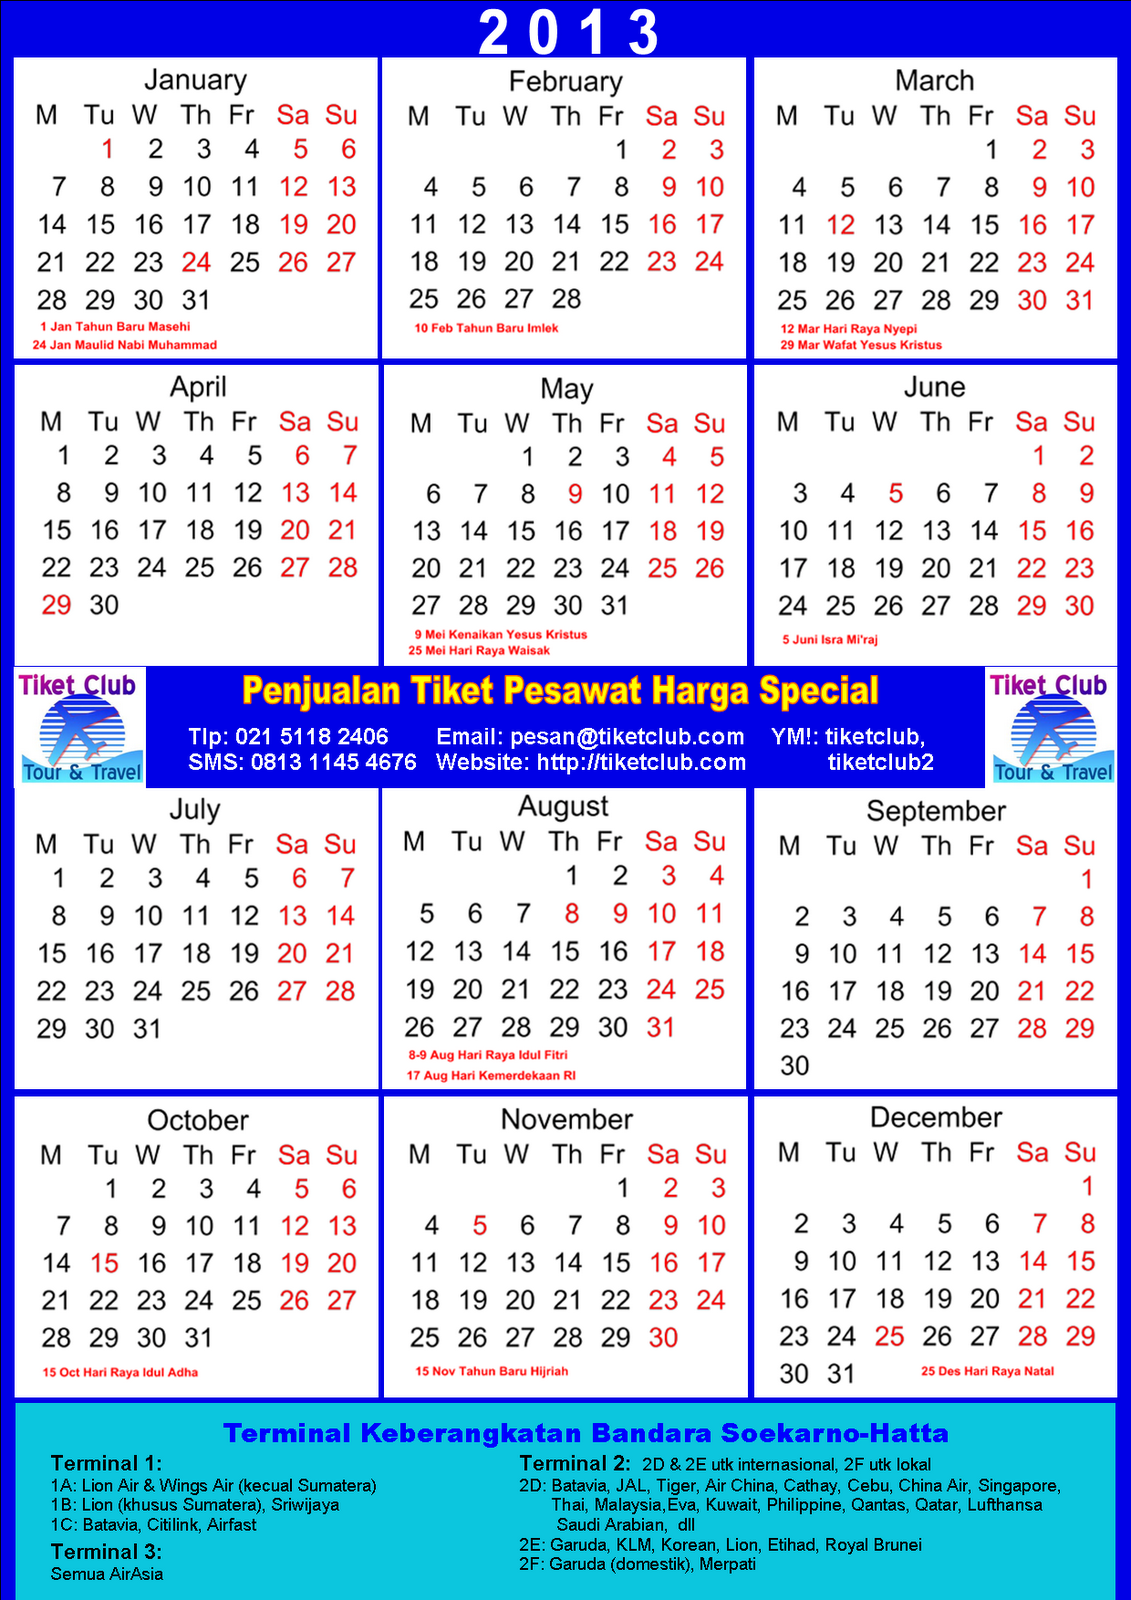 Tiket Club - Beli Tiket Praktis Ekonomis: Kalender 2013 